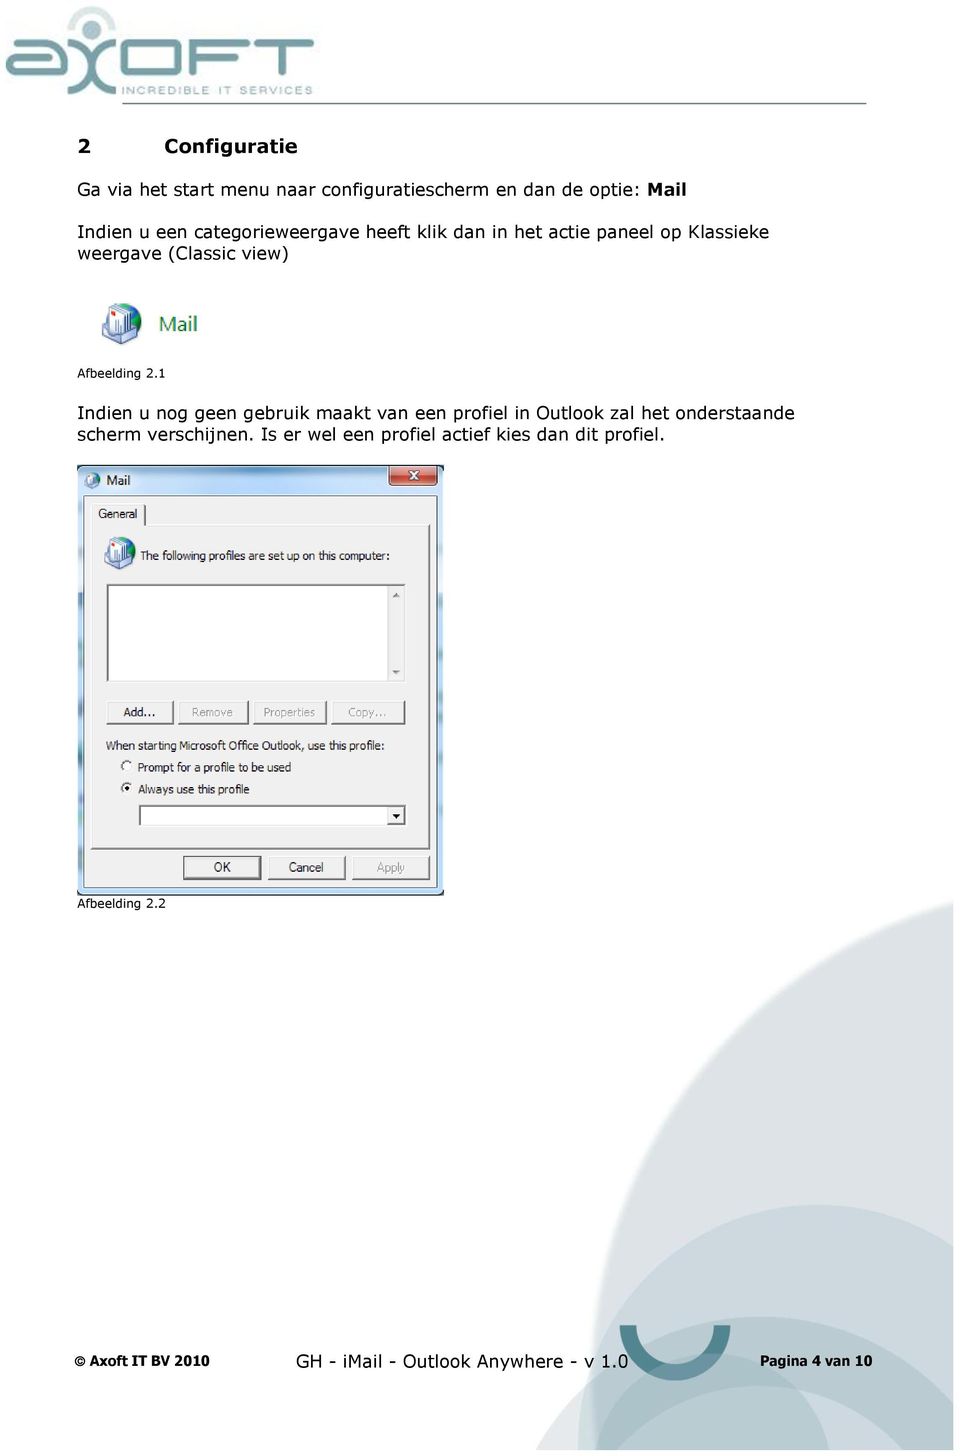 1 Indien u nog geen gebruik maakt van een profiel in Outlook zal het onderstaande scherm verschijnen.